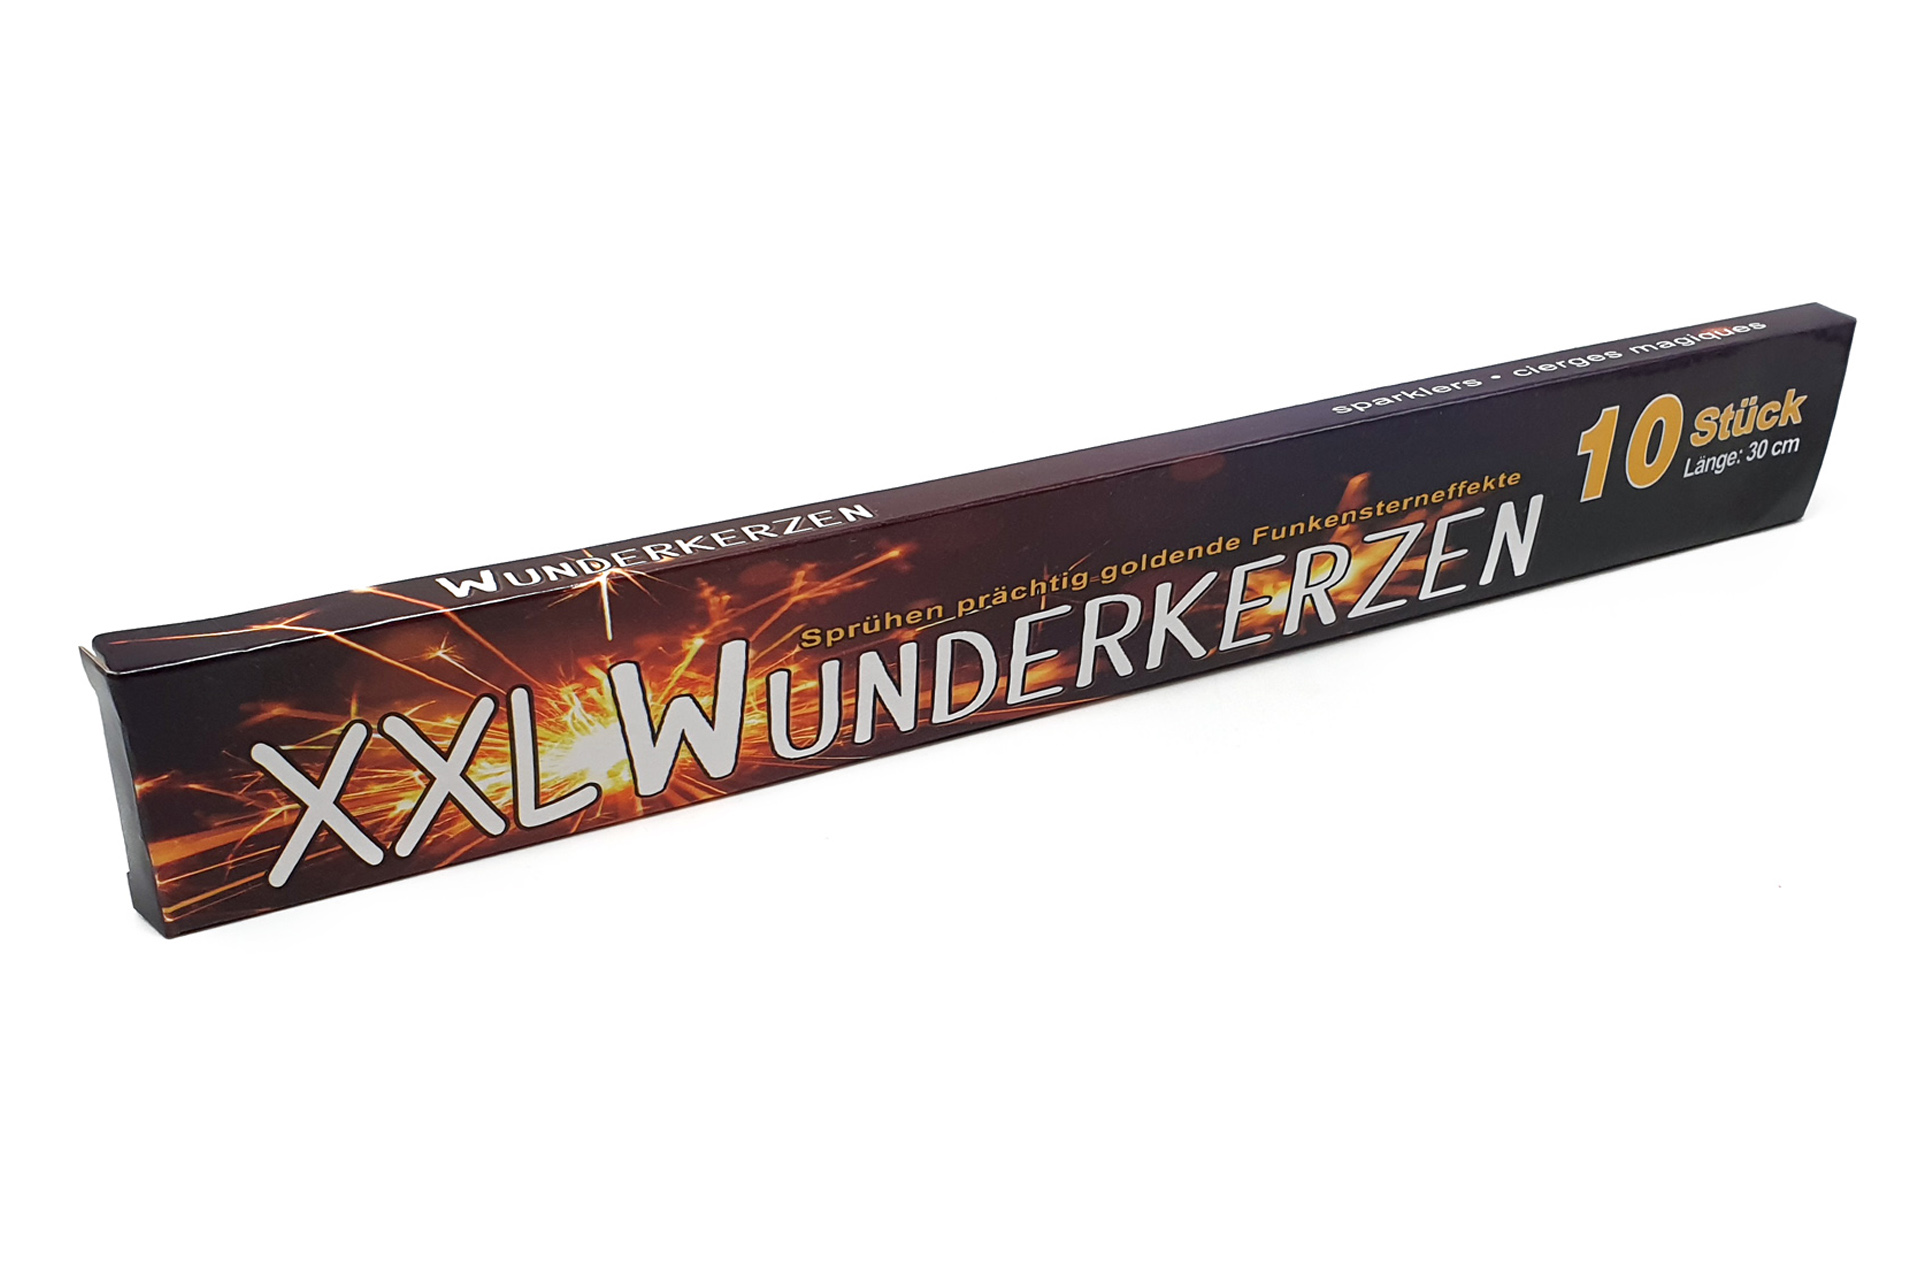 Wunderkerzen XXL 10er - 30cm